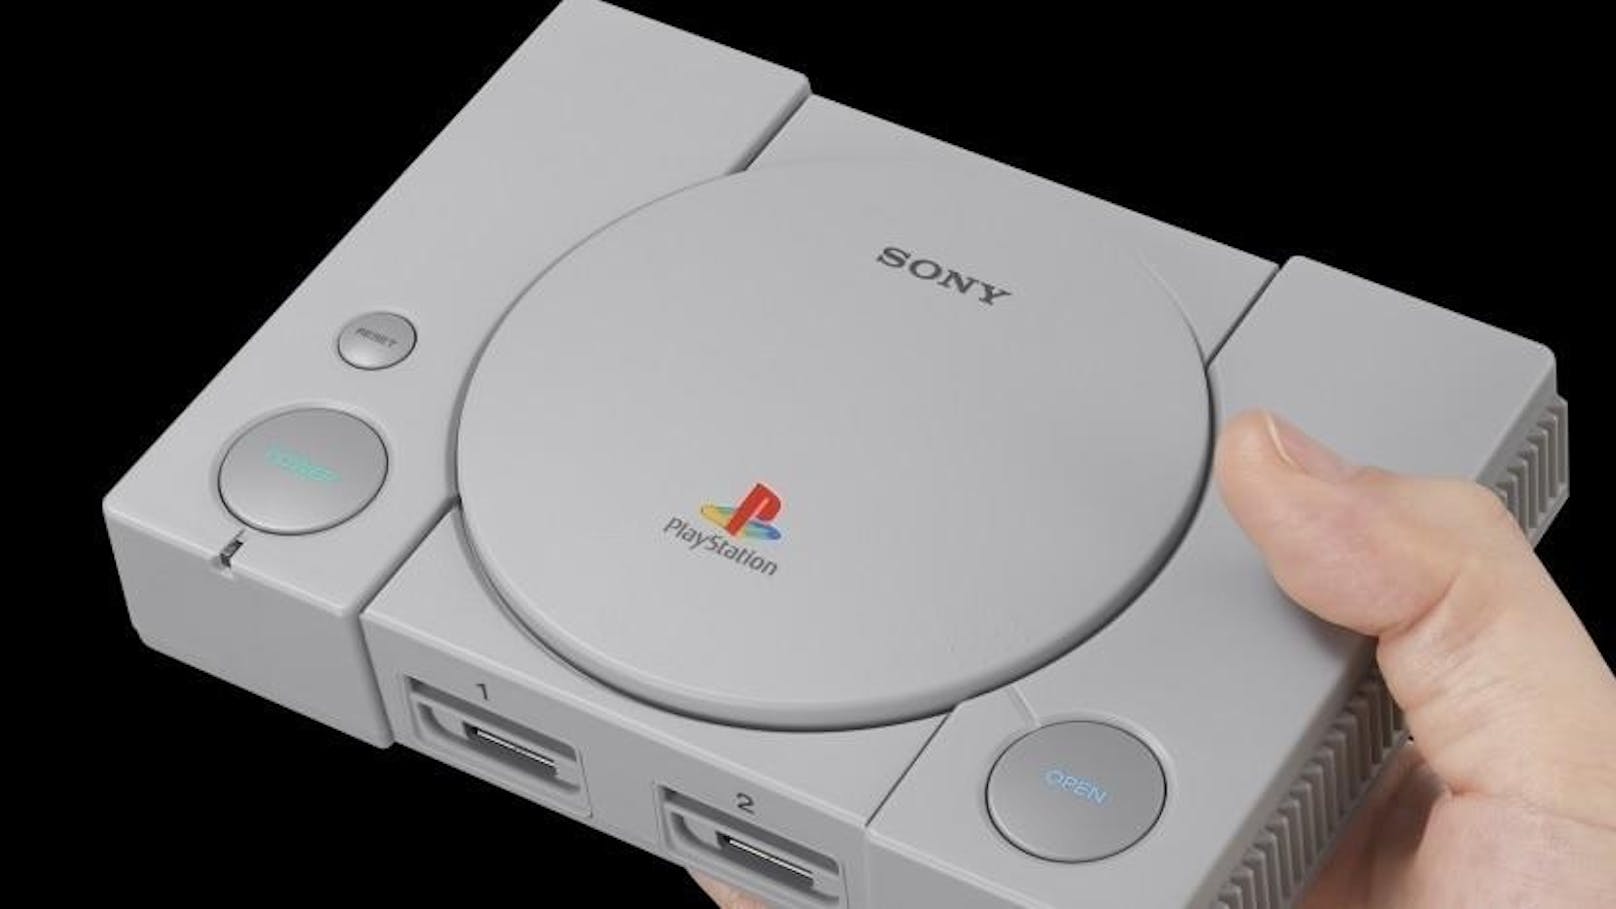 Auch Sony veröffentlicht bald eine Retro-Konsole im Miniformat. Nun wurde bekannt, welche Spiele auf der PlayStation Classic vorinstalliert sind. Unter den 20 Titeln befinden sich etwa das erste "Grand Theft Auto", "Final Fantasy 7", "Resident Evil Director's Cut", "Tekken 3" und "Tom Clancy's Rainbow Six". Die Neuauflage der Konsole inklusive zweier Controller erscheint Anfang Dezember.